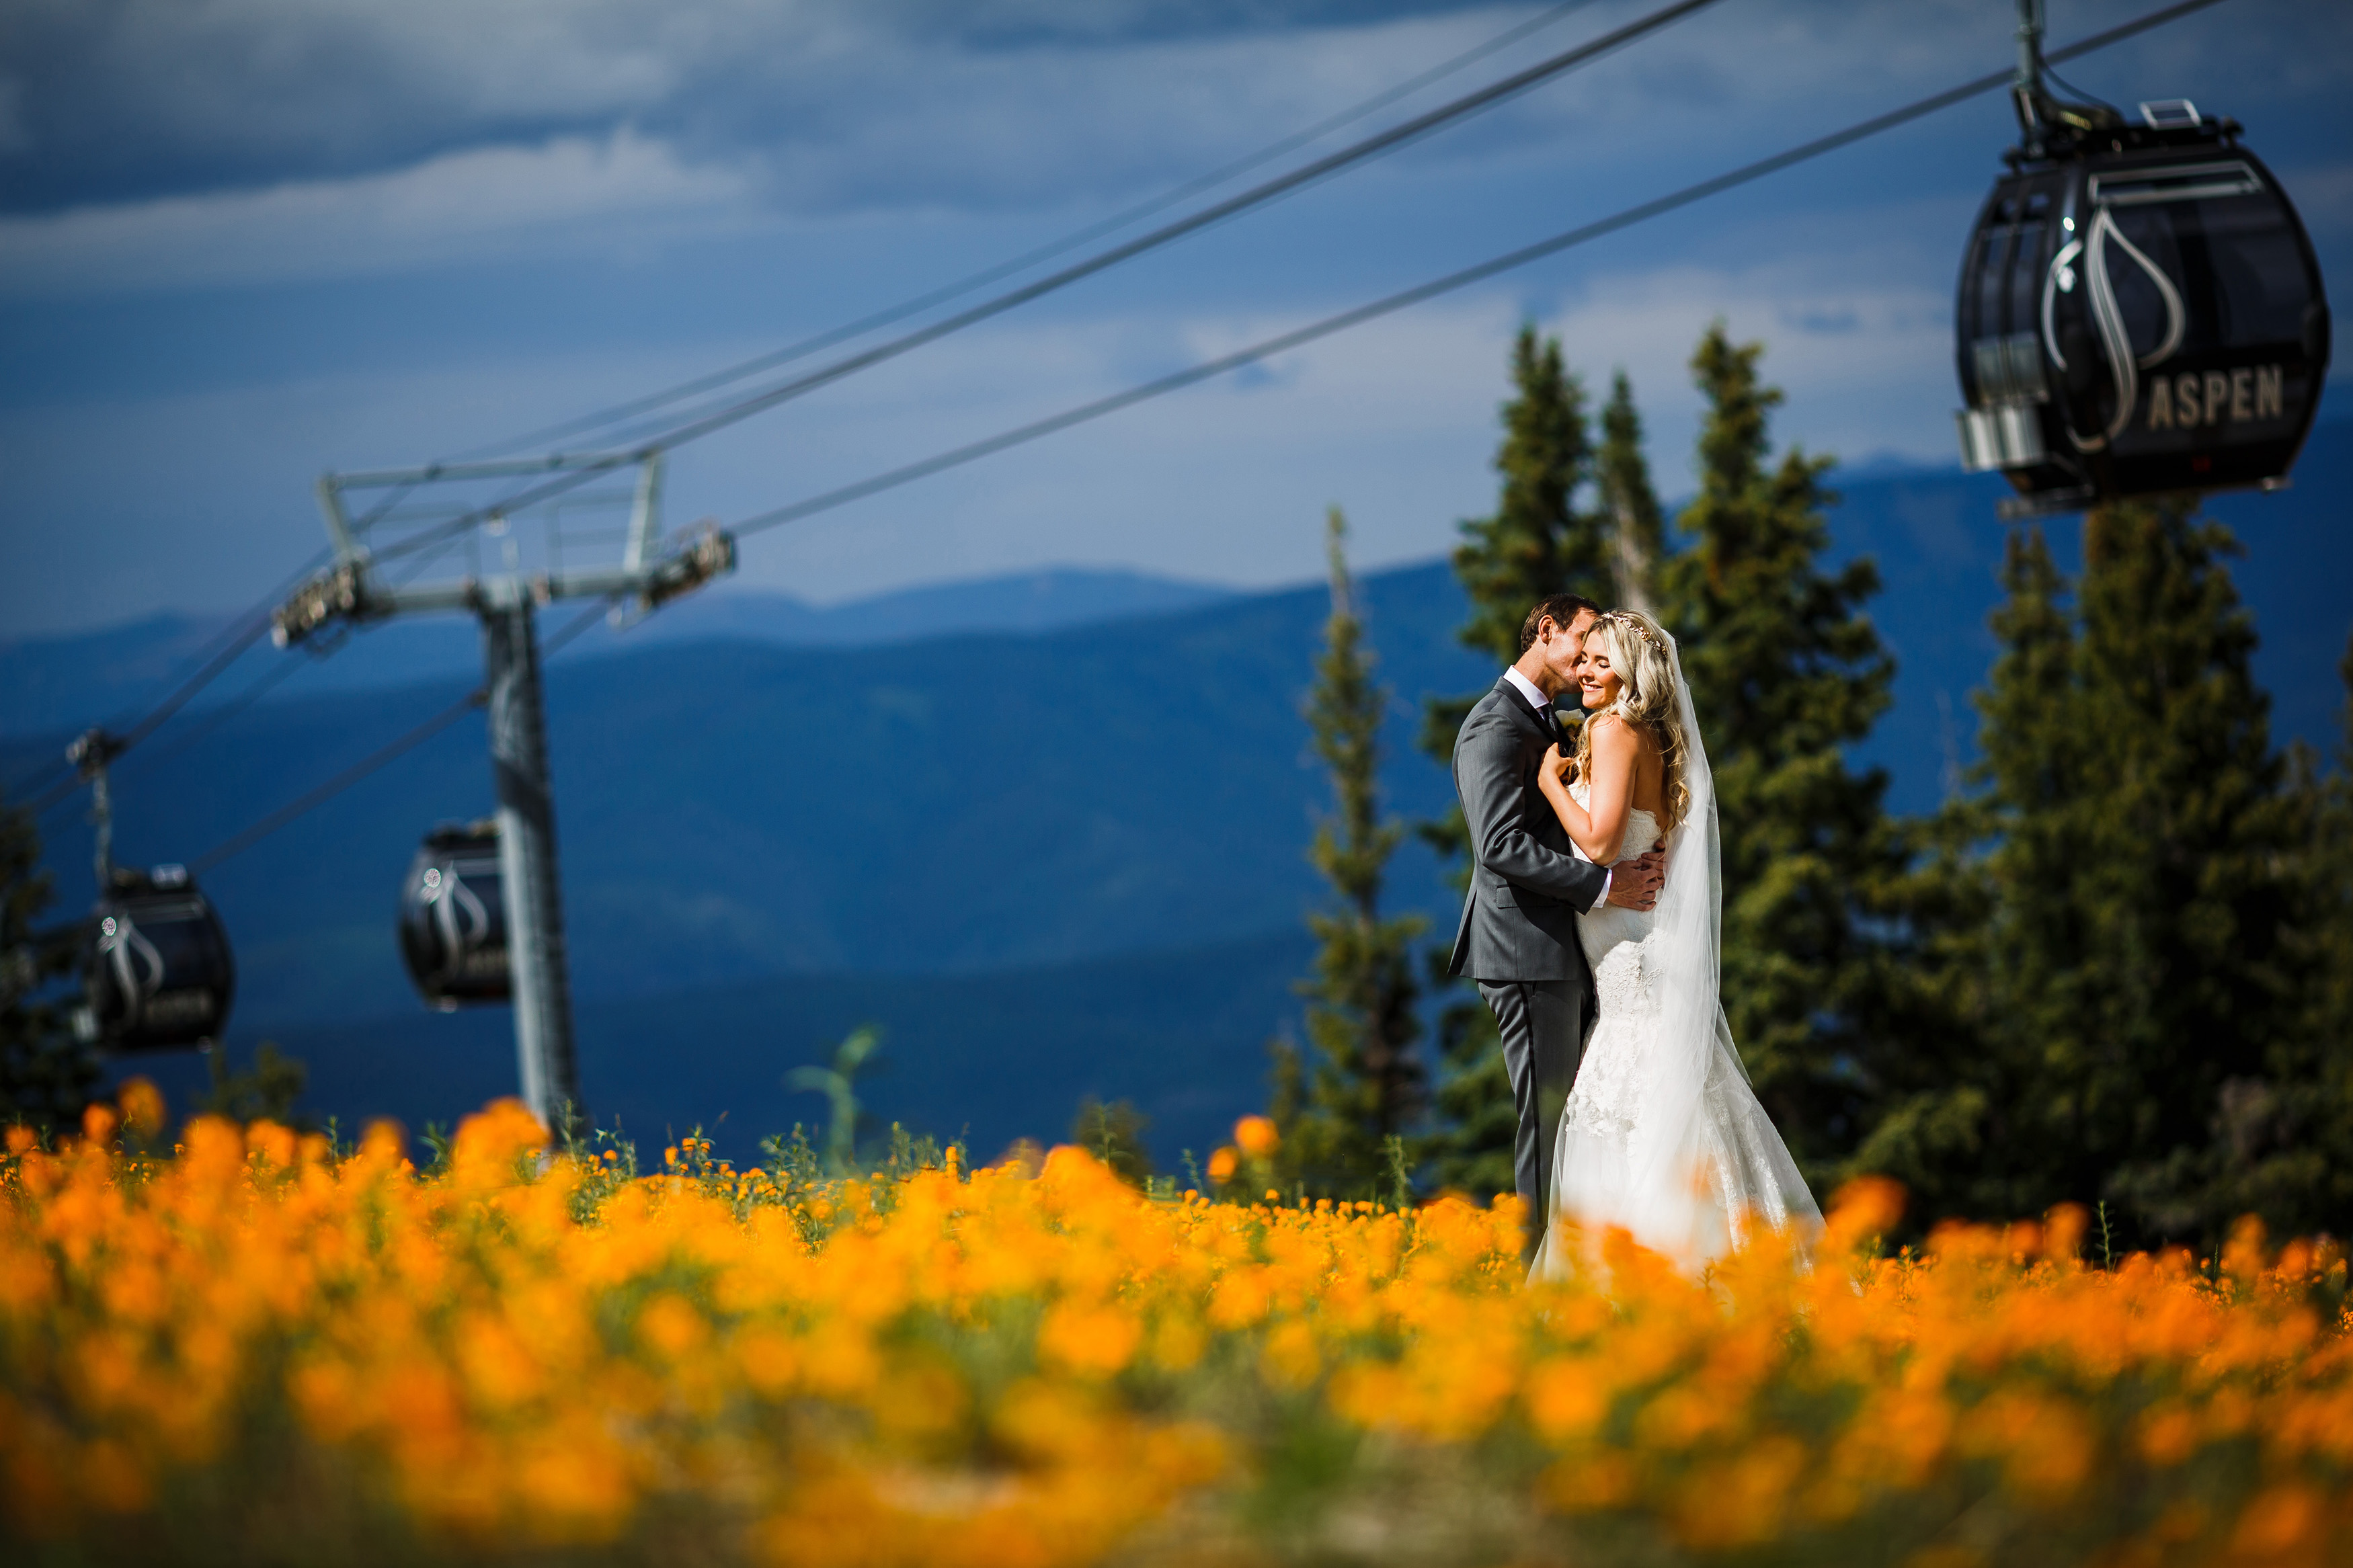 Bride & Groom in field of Wildflowers at Aspen Wedding Deck in Aspen, CO